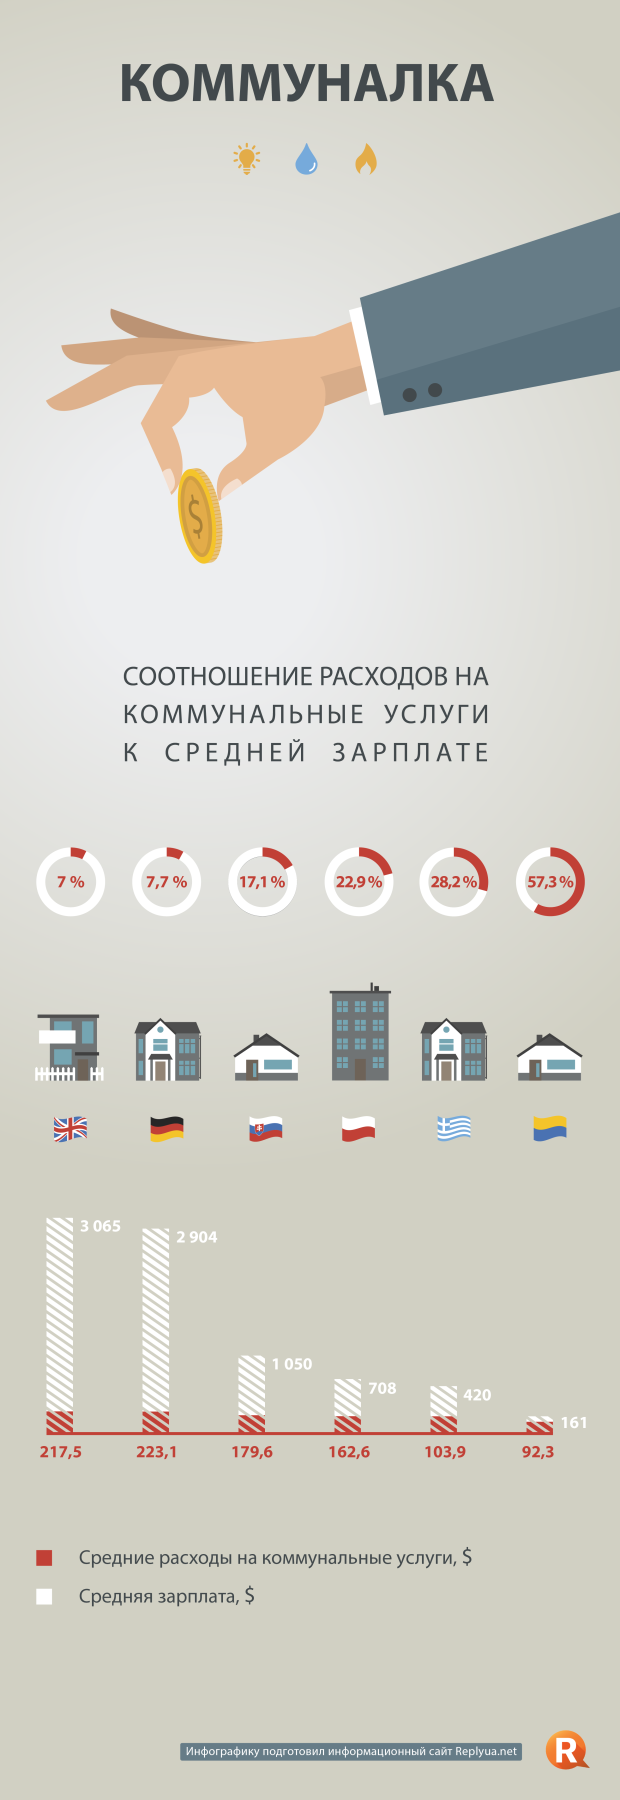 Коммуналка в Украине и других странах - инфографика